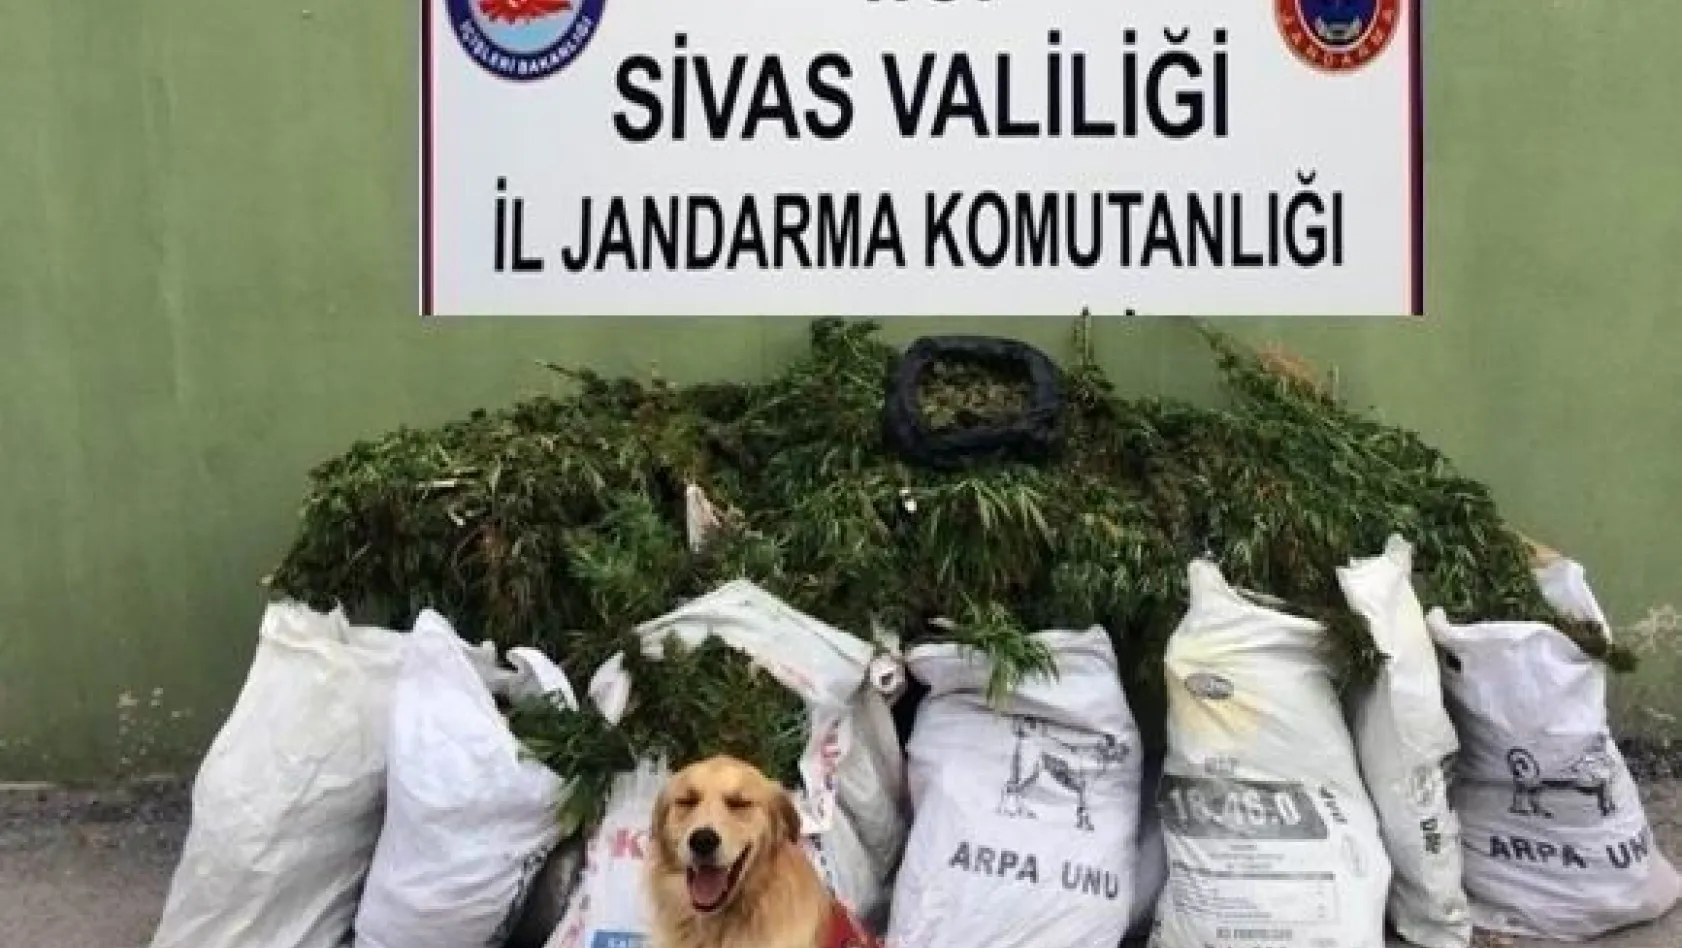 Sivas'ta 46 kilo esrar ele geçirildi
